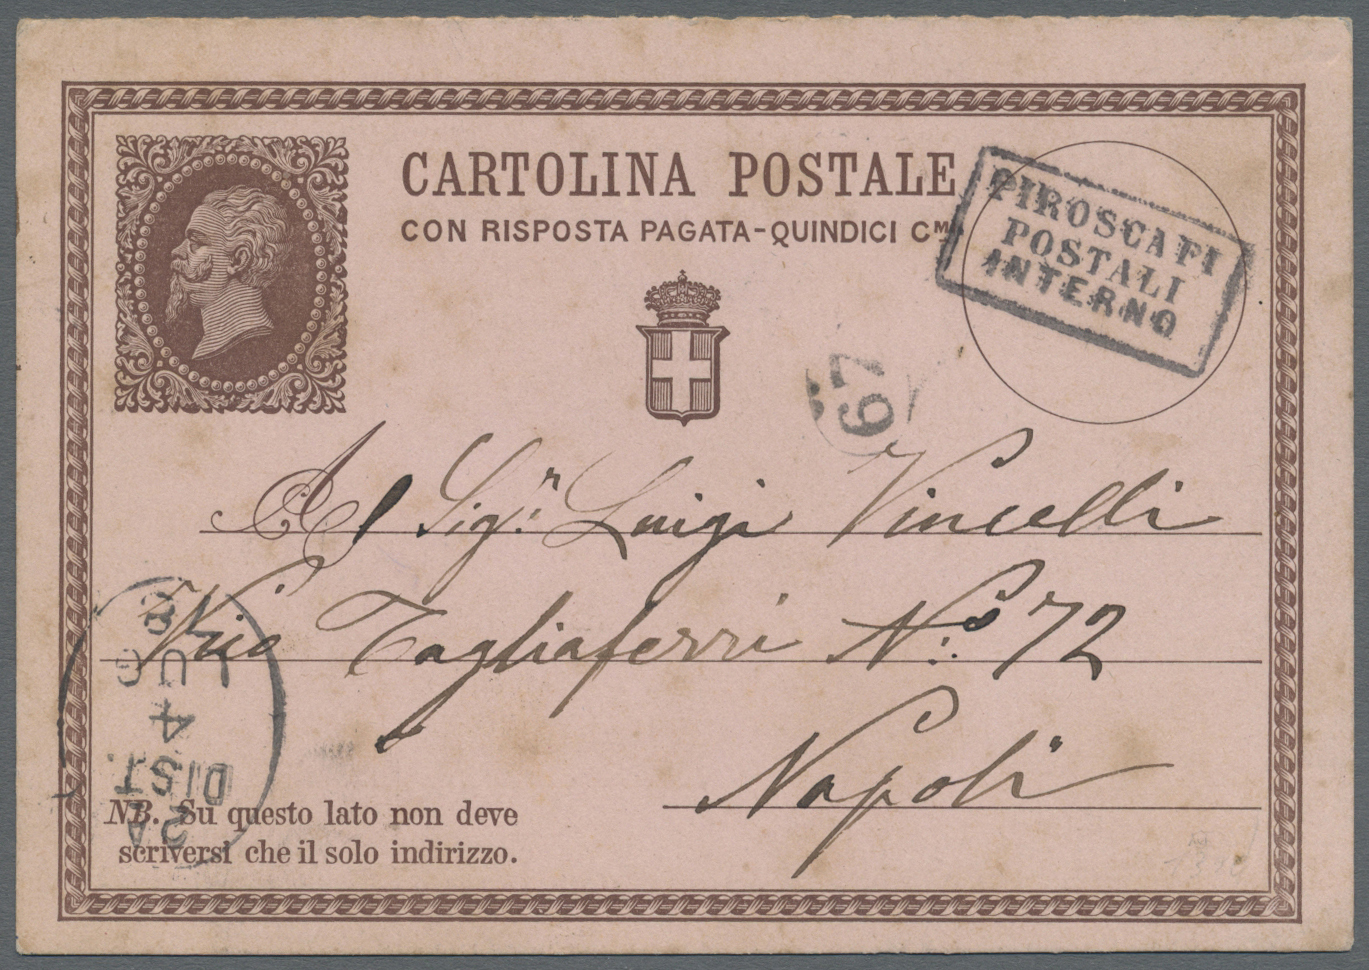 GA Italien - Stempel: 1878, Italian Postal Stationery "Cartolina Postale Con Risposta Pagata Quindici Cmi", Tied - Marcophilie